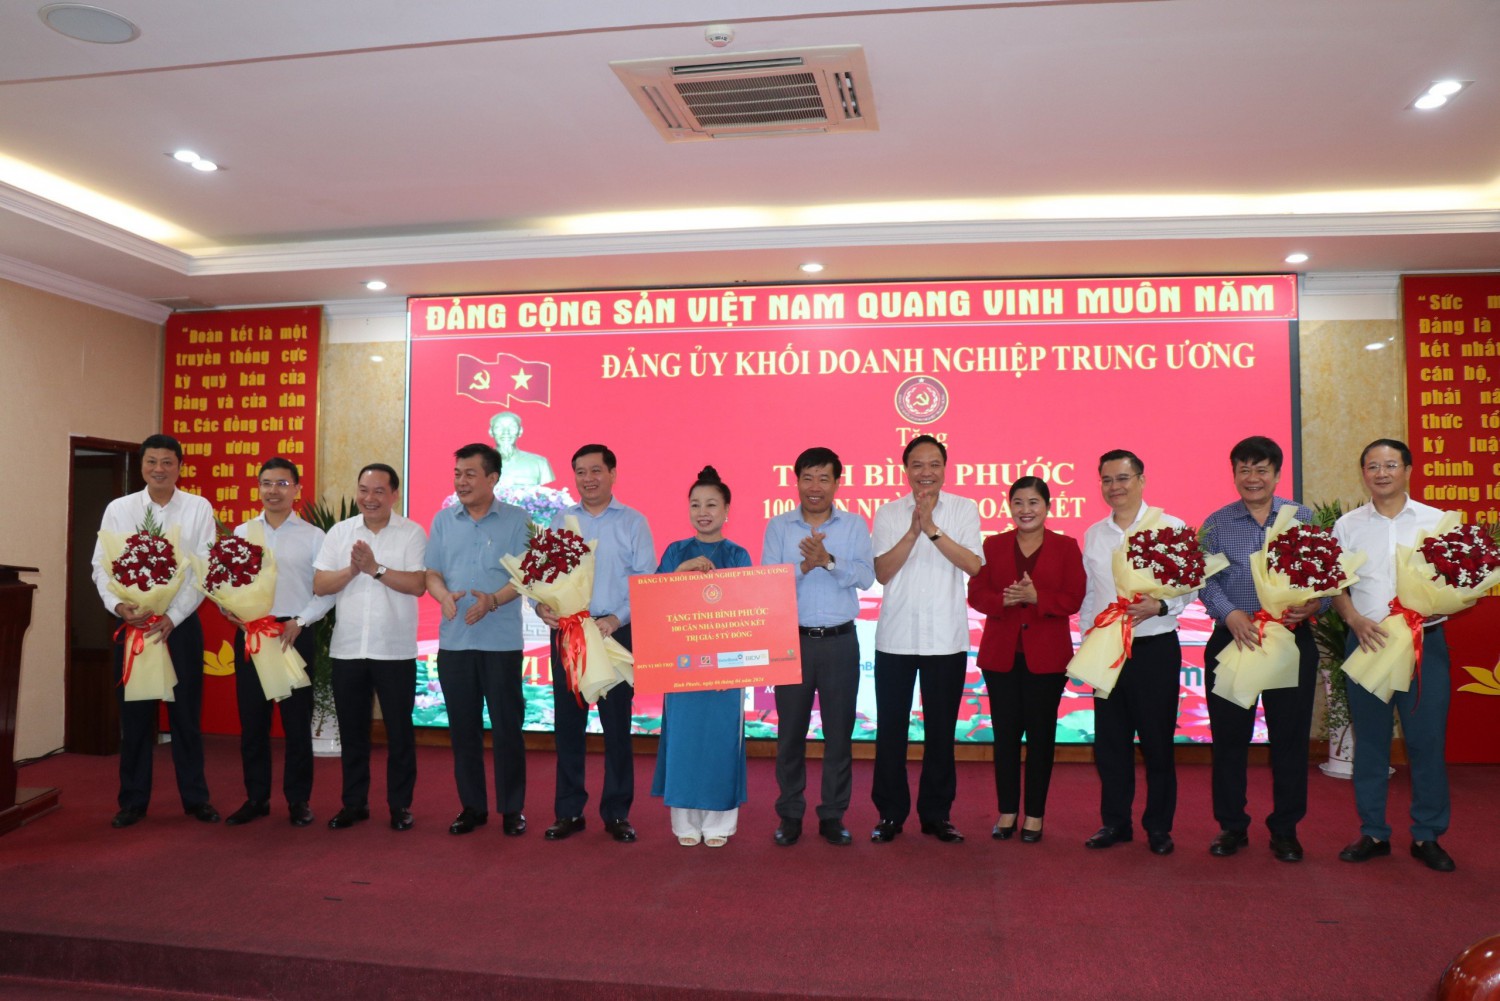 Đảng ủy Khối Doanh nghiệp Trung ương trao tặng 100 căn nhà đại đoàn kết cho tỉnh Bình Phước.